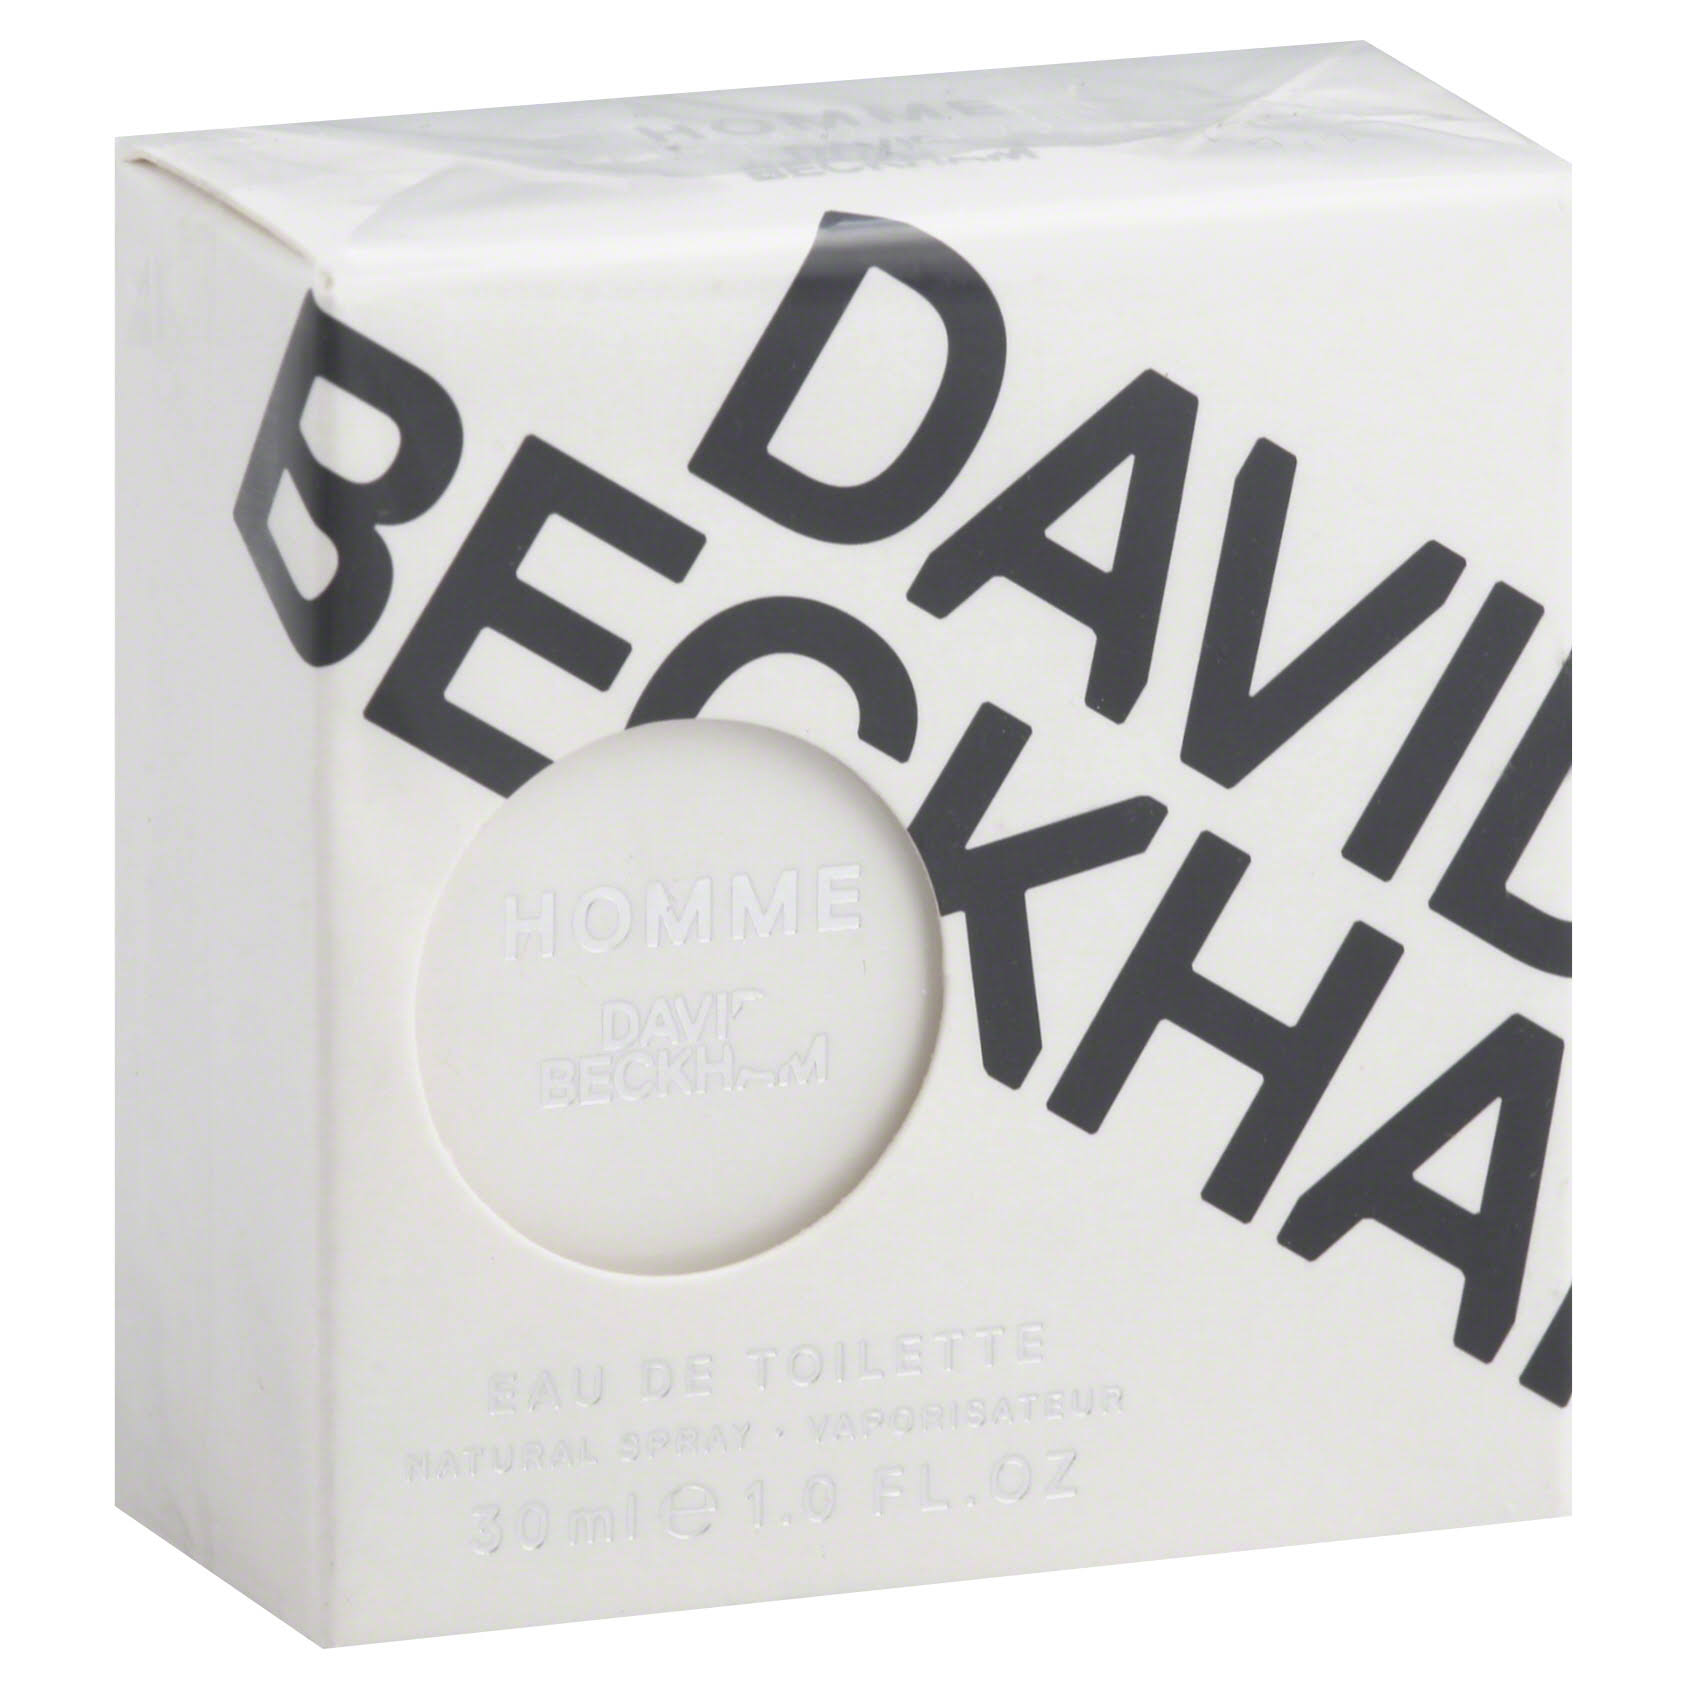 David Beckham Homme for Men Eau de Toilette Spray - 30ml